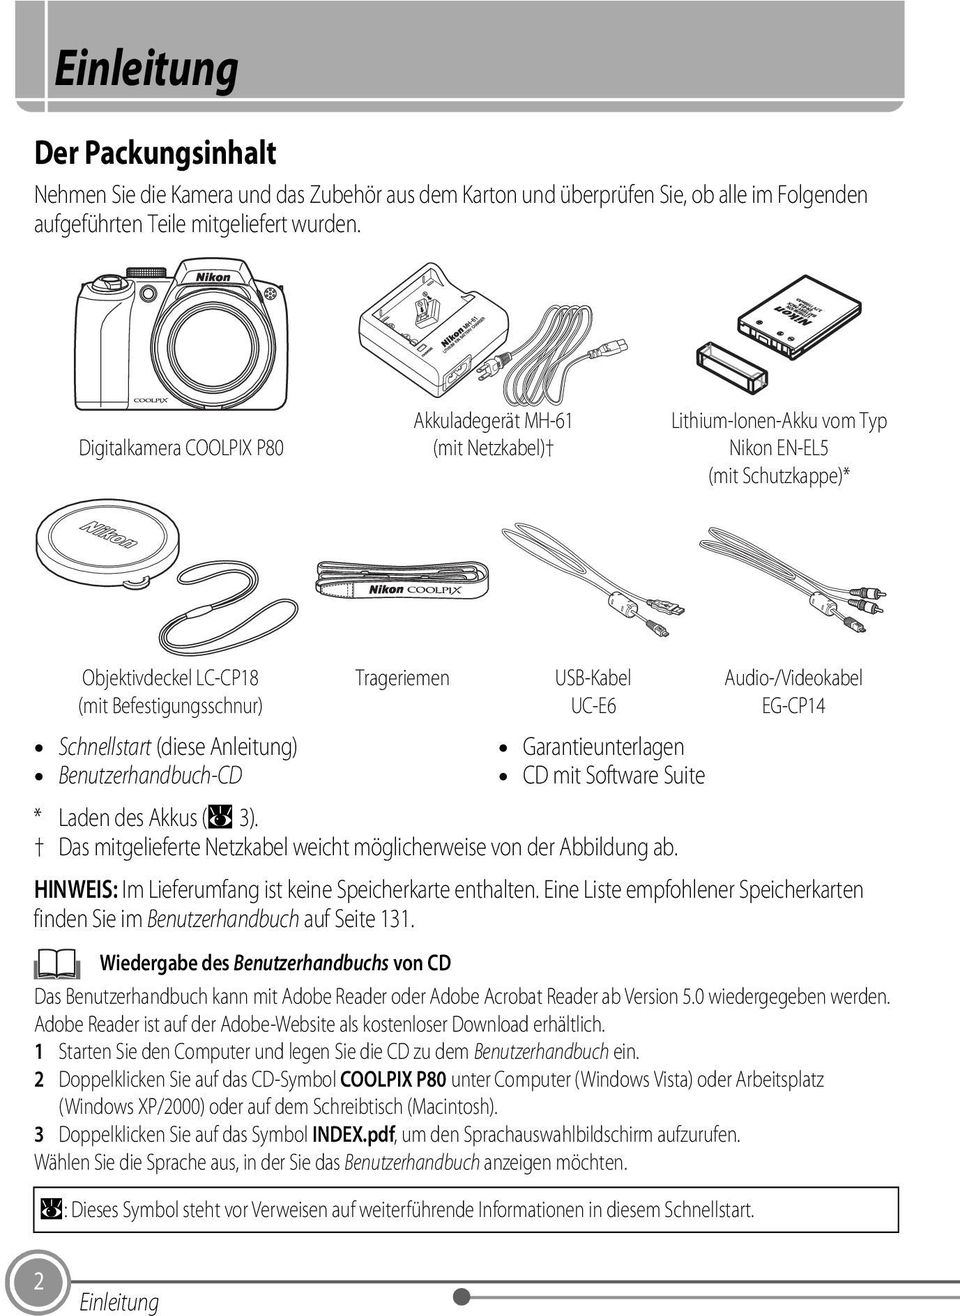 Benutzerhandbuch-CD Trageriemen USB-Kabel UC-E6 Garantieunterlagen CD mit Software Suite Audio-/Videokabel EG-CP14 * Laden des Akkus (A 3).